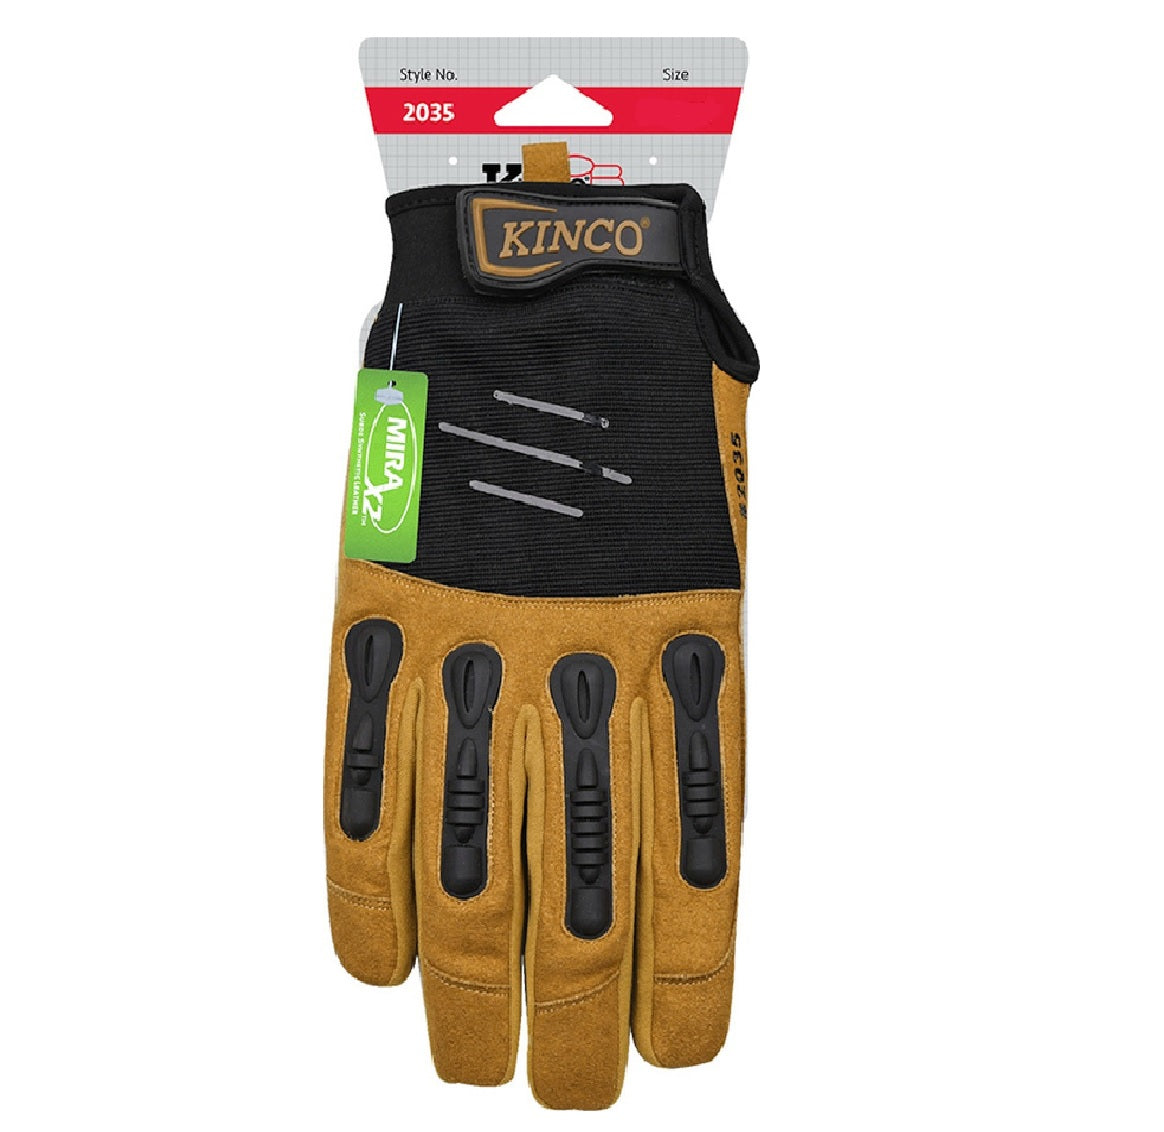 Kinco 2035-XL Foreman Men's Padded Gloves, Black/Tan